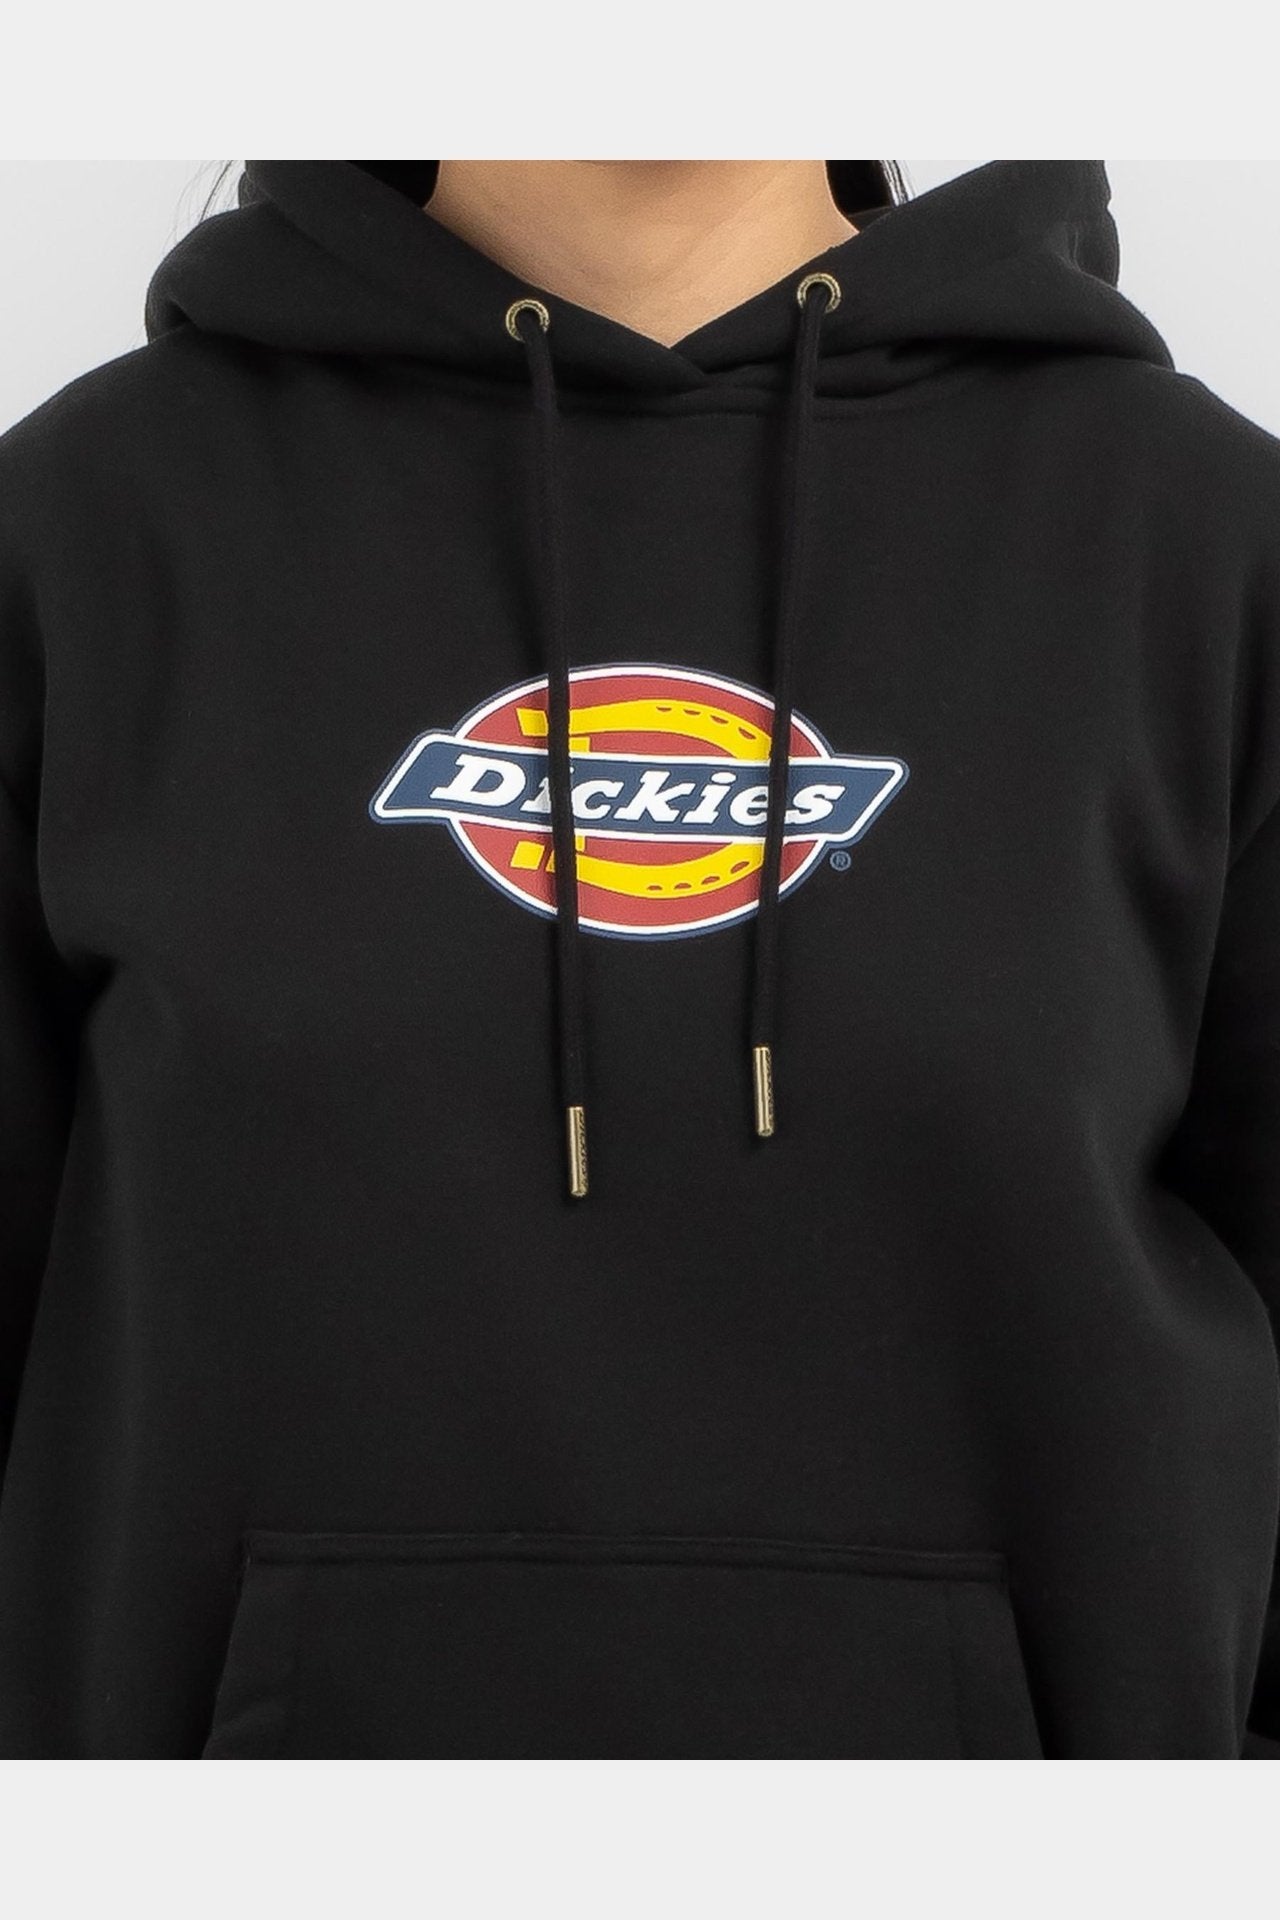 Dickies Classic Standard Pullover Hoody - Black